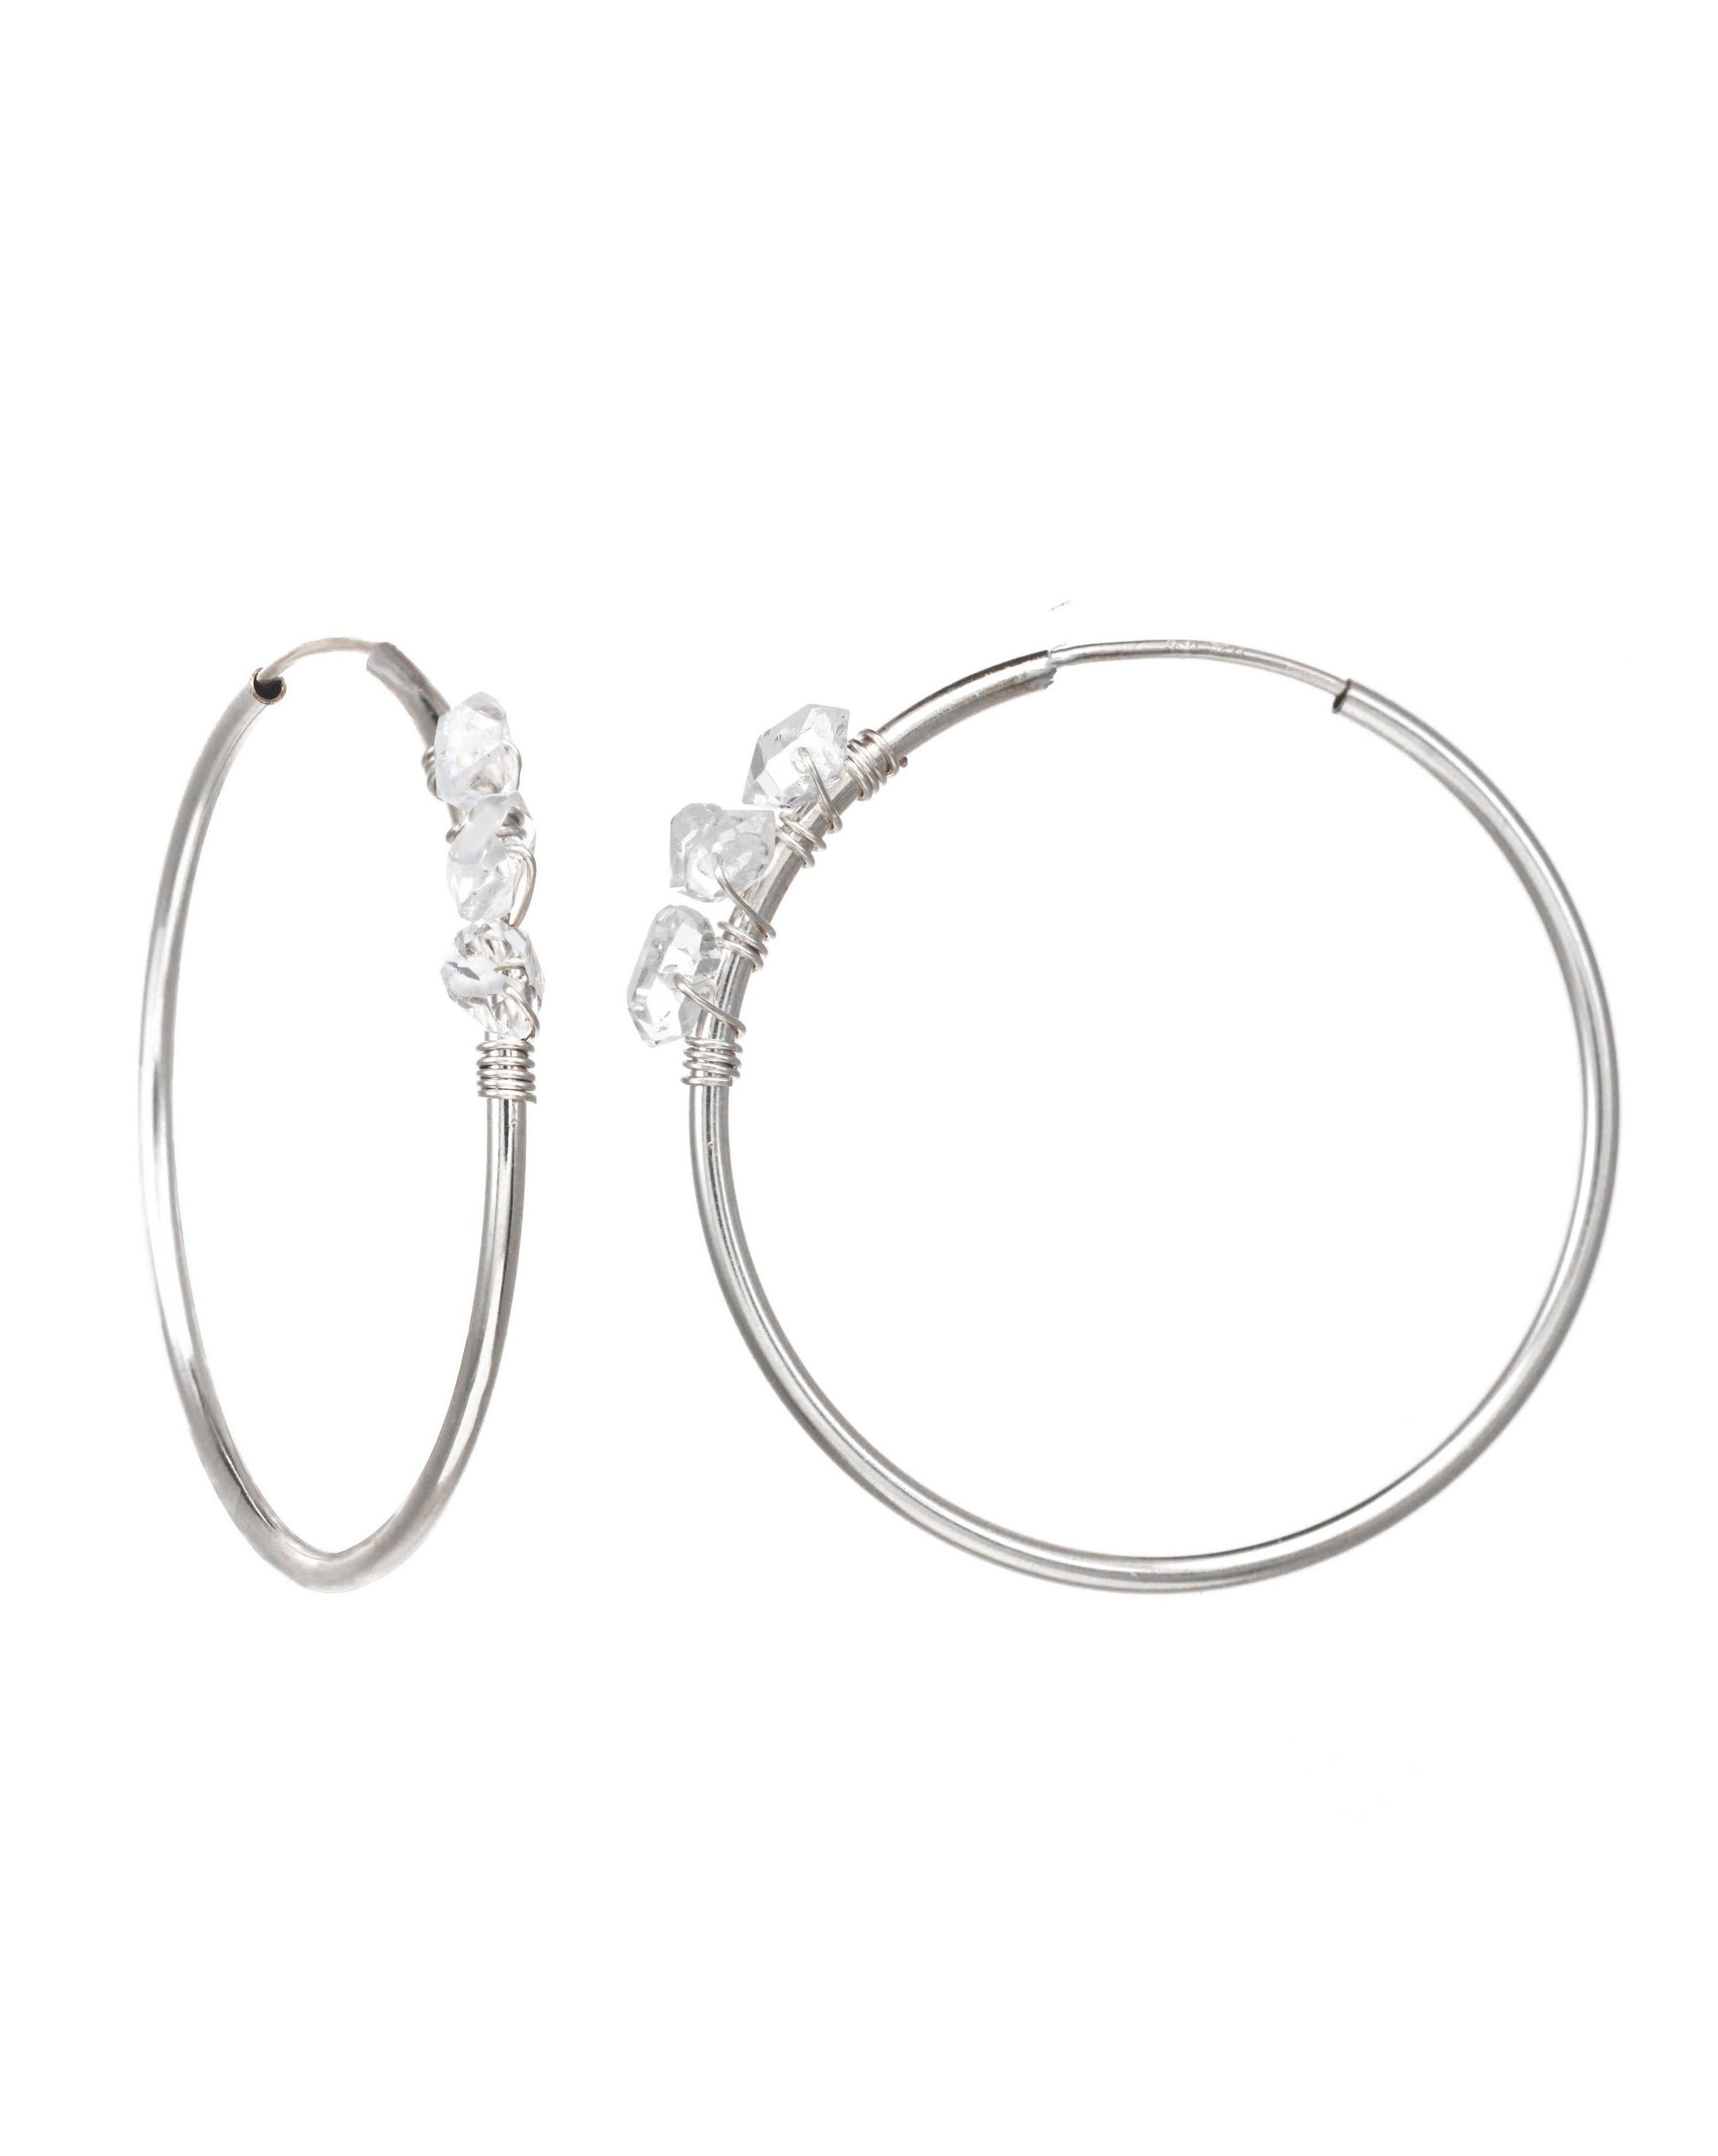 Selena Herkimer Hoop Earrings by KOZAKH. 30mm hoop earrings in Sterling Silver, featuring Herkimer Diamonds.